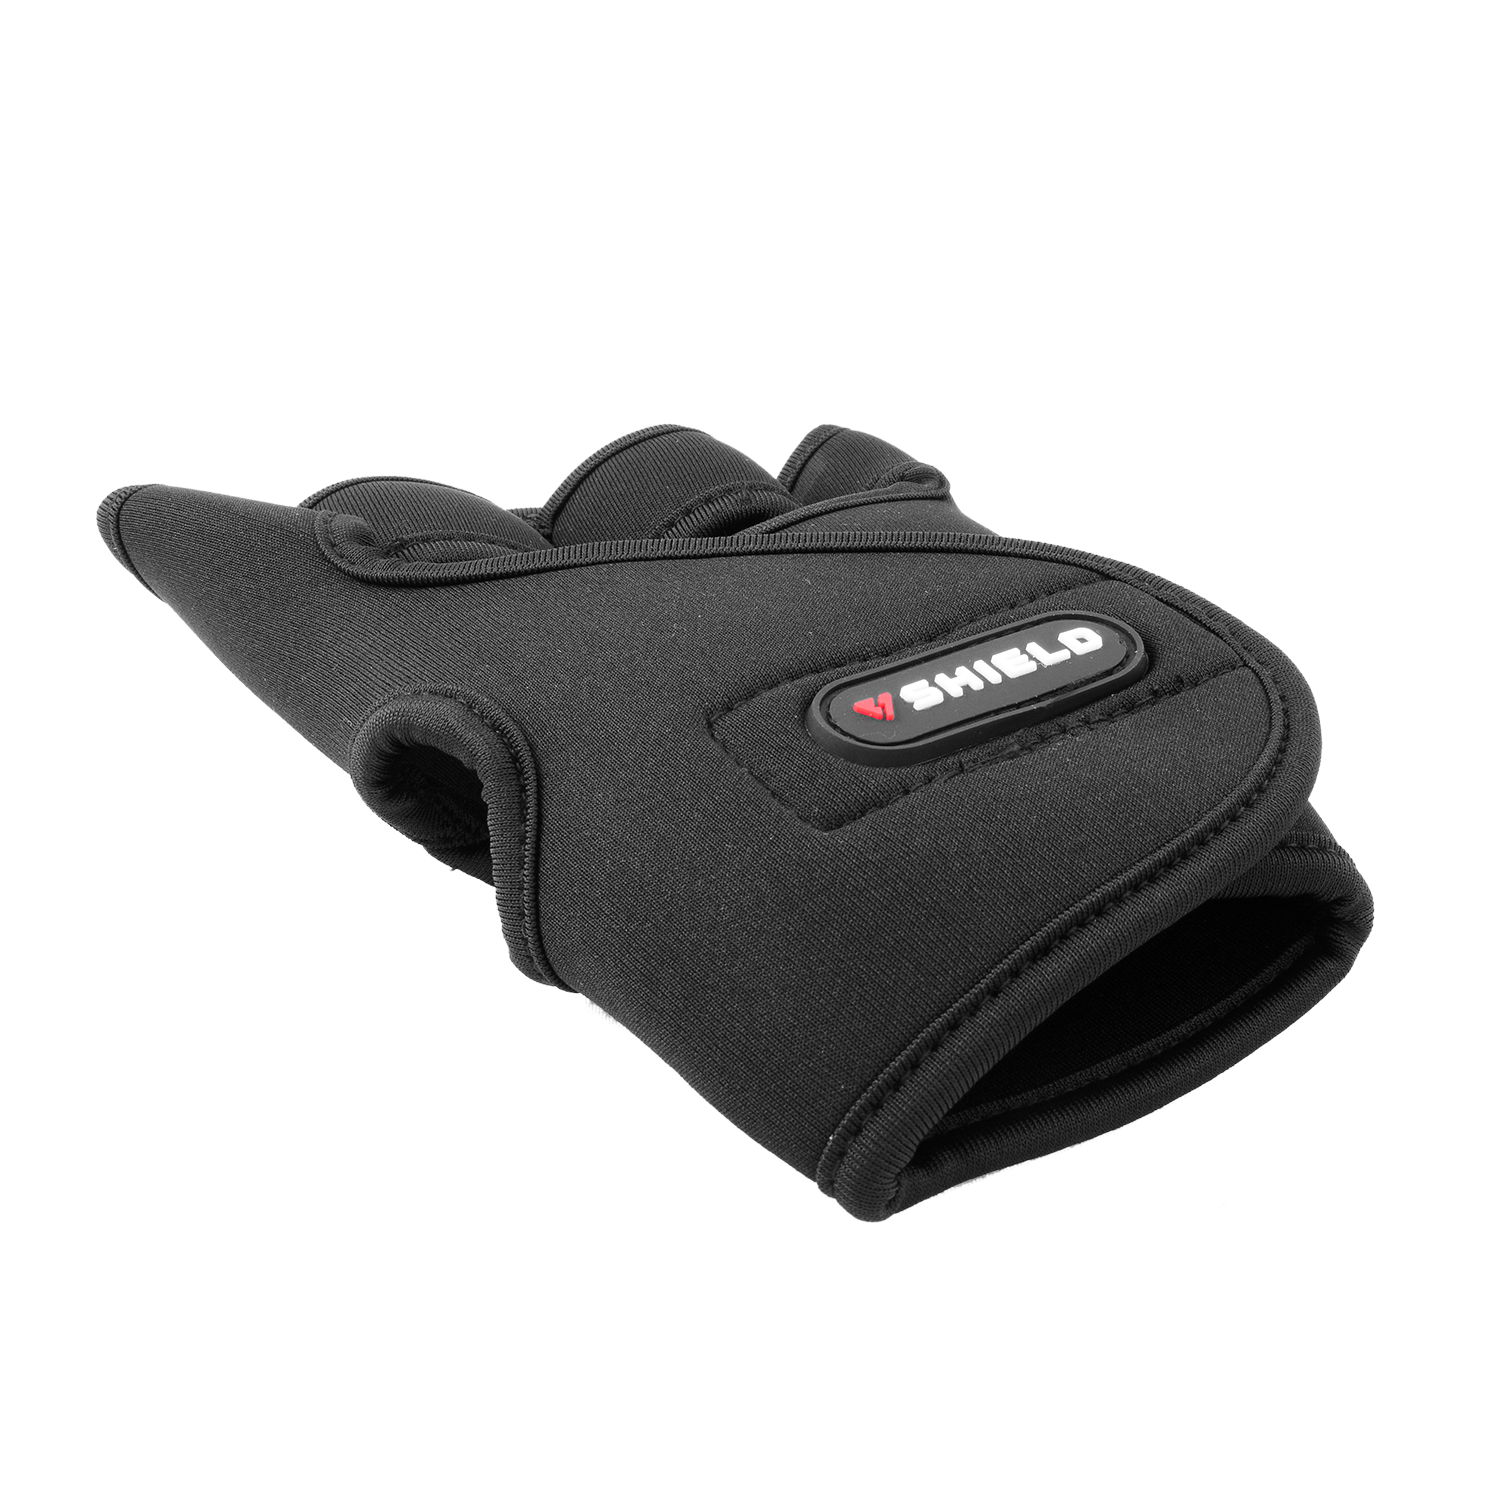 Shield ZL5000 Neoprene Fitness Gloves - Pair